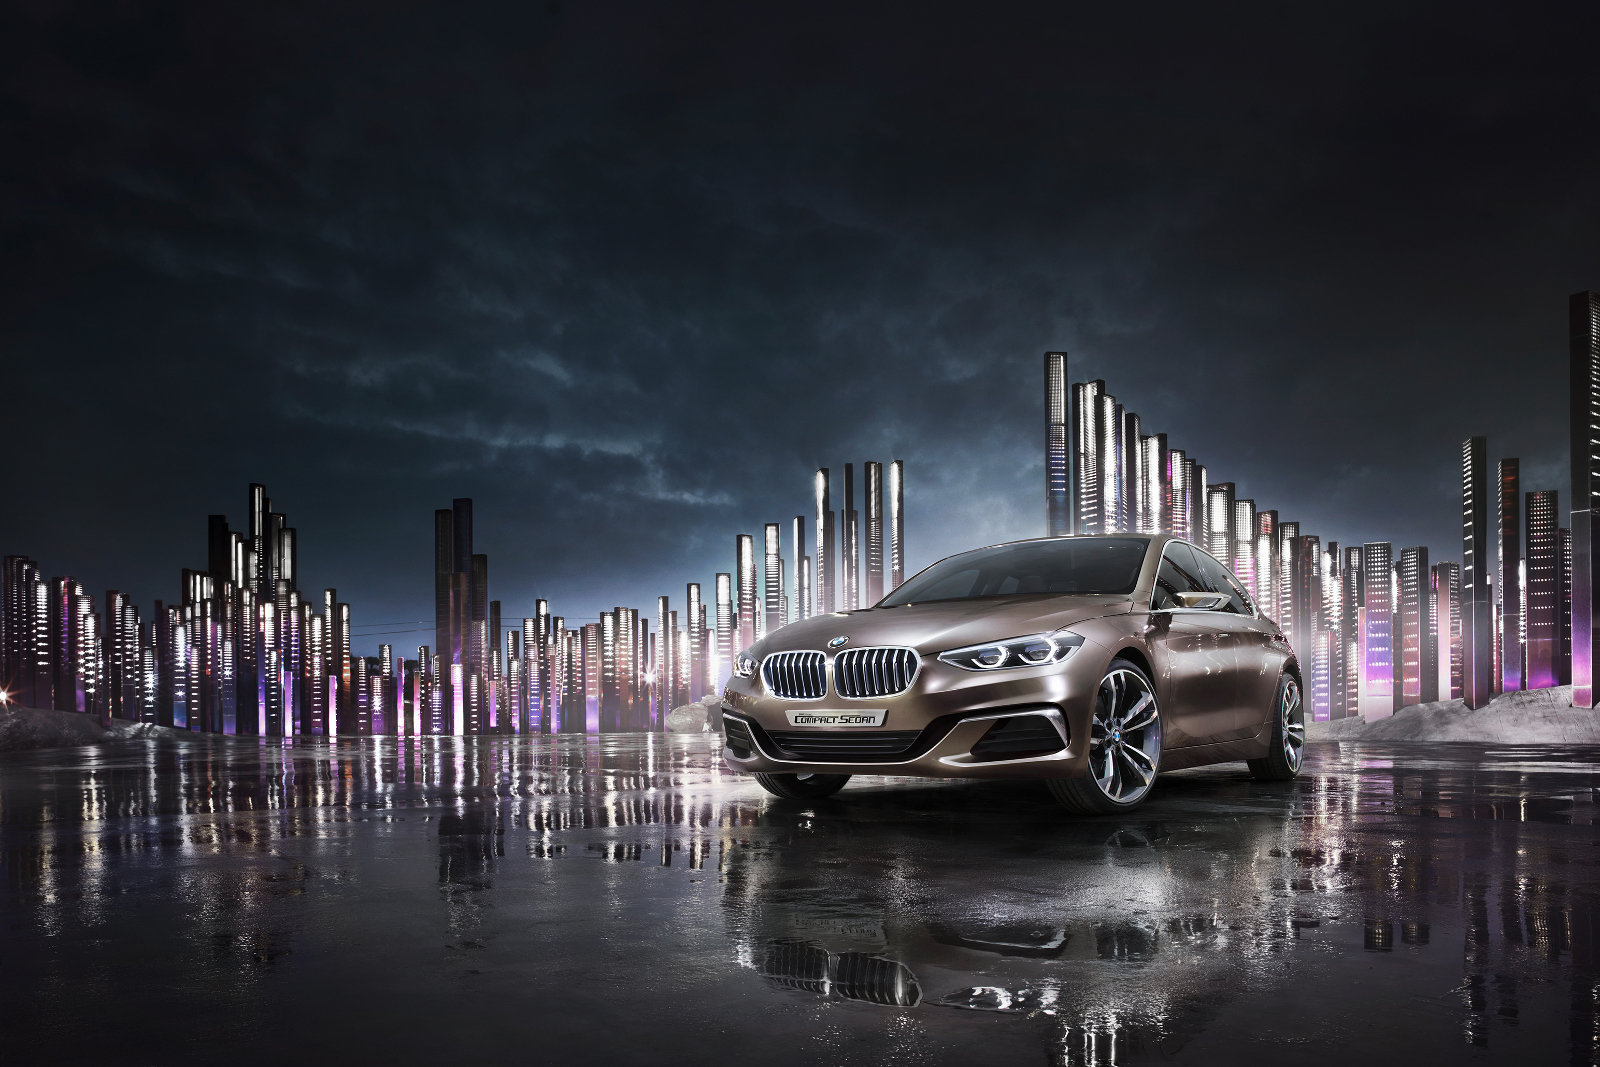 LED diody i v předních světlech, BMW Concept Compact Sedan.